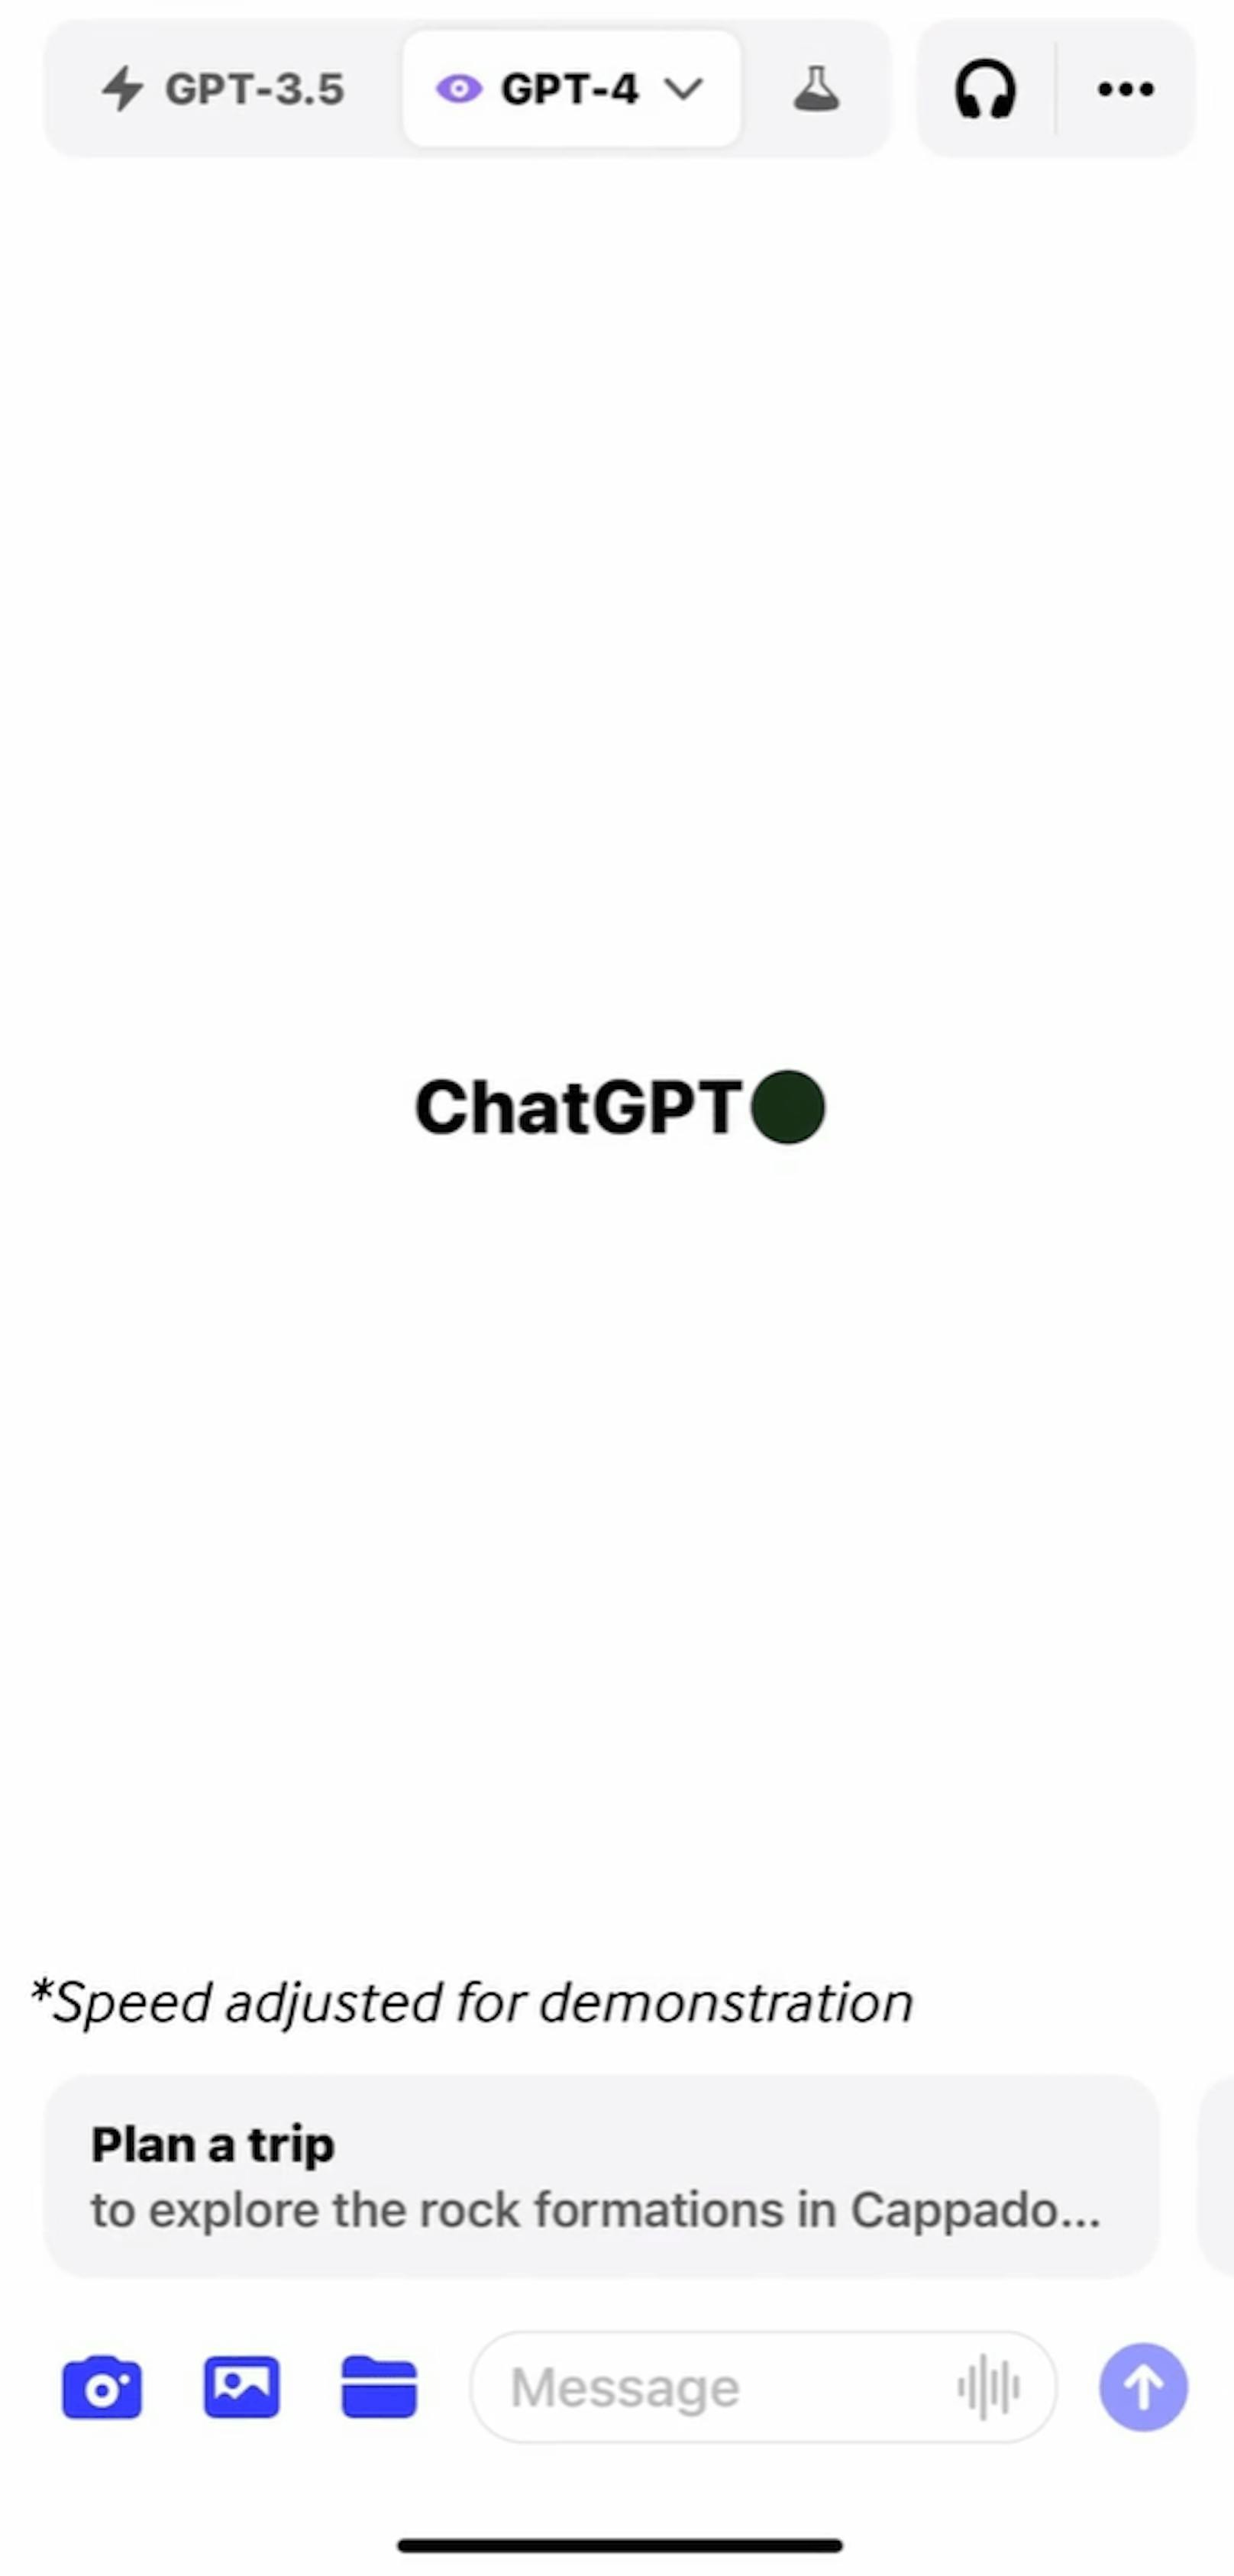 Die Bildfunktion ist wohl das beeindruckendste Update von ChatGPT. Mit dem neuen Plus-Button können Bilder direkt aus der Camera Roll an ChatGPT gesendet werden.